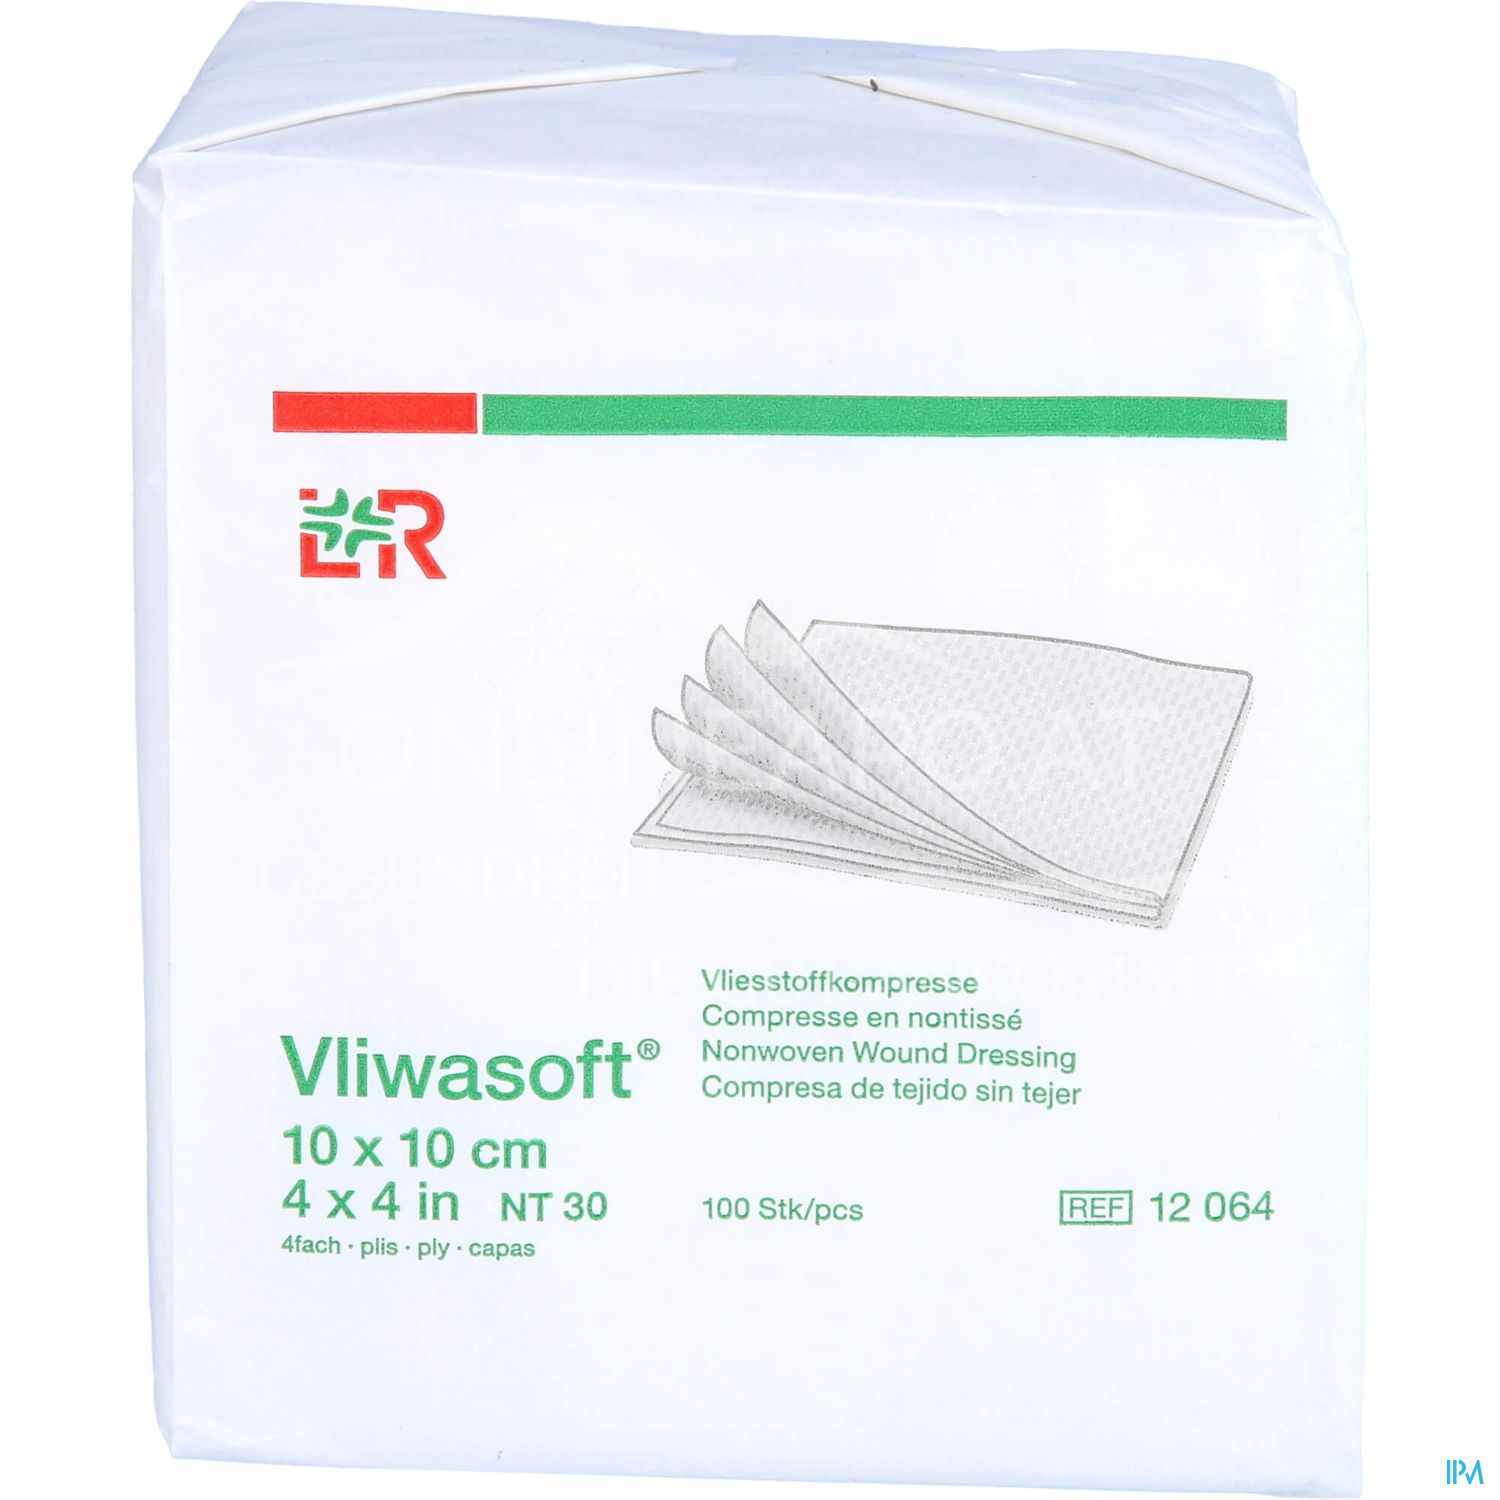 Vliwasoft® Vliesstoffkompressen, unsteril, 4-lagig, 10 x 10 cm